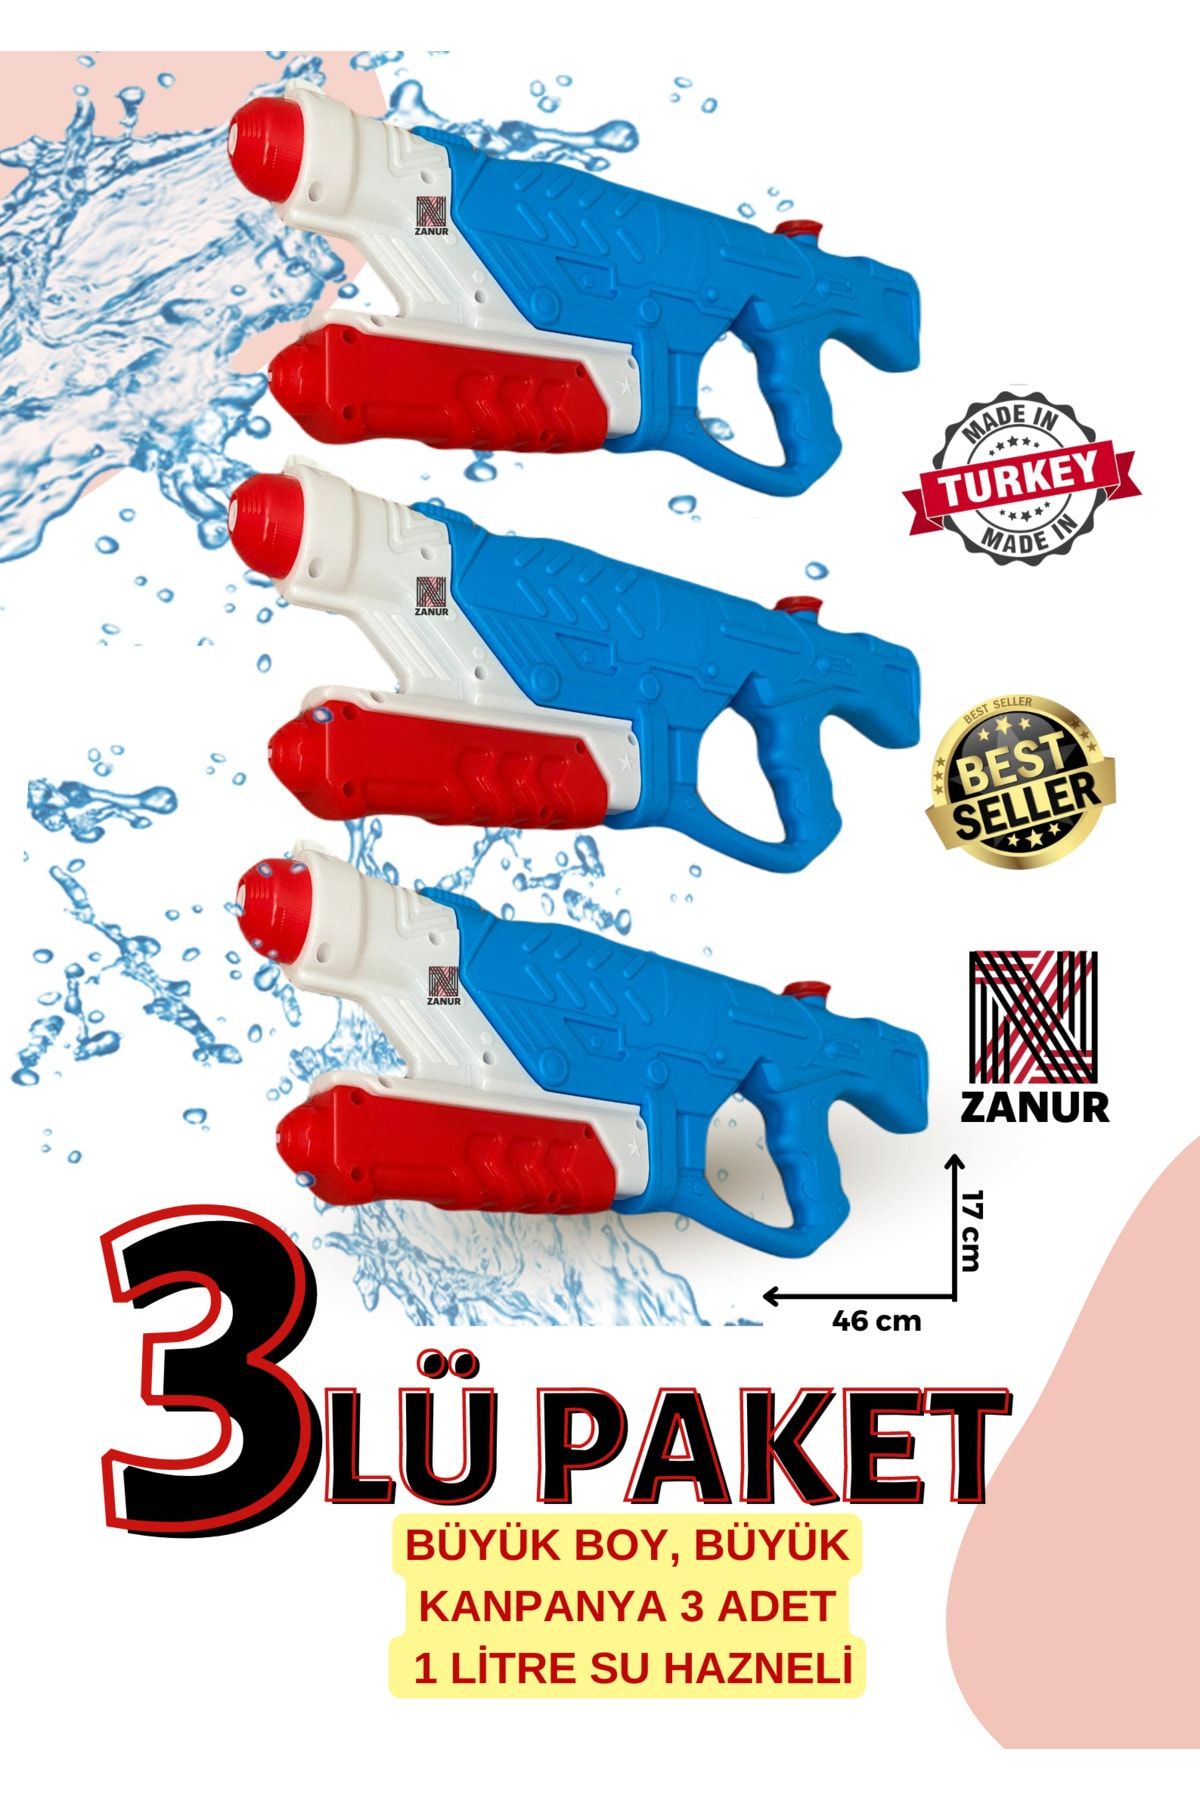 zanur 3lü PAKET Su Tabancası Pompalı su Tabancası oyuncak, 1 LT HAZNELİ